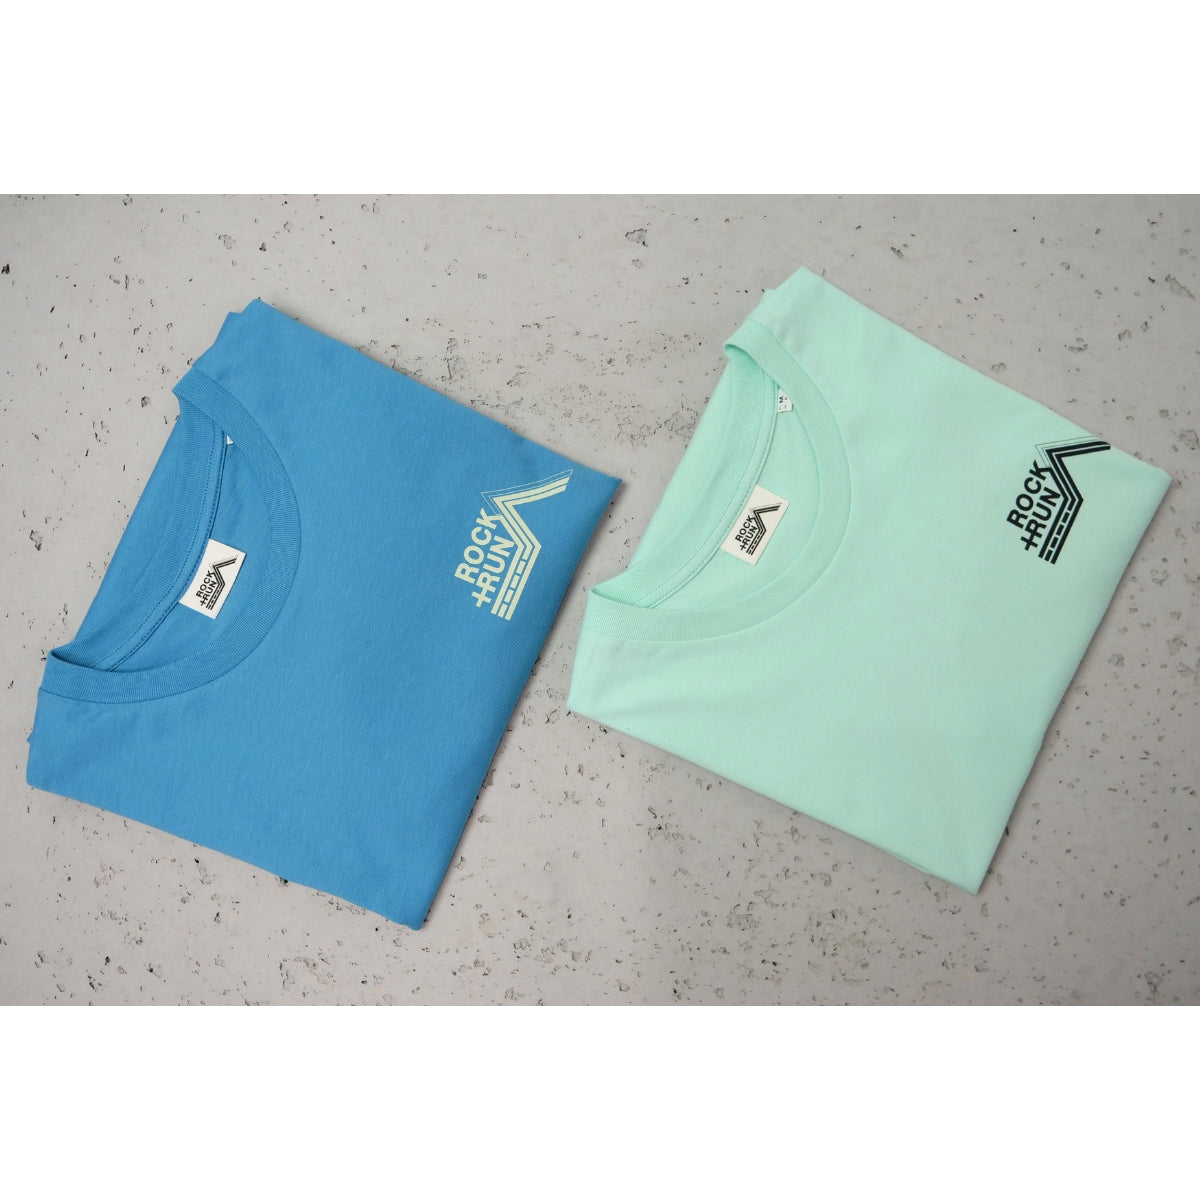 Rock+Run T-Shirt Folded - Atlantic Blue and Caribbean Blue